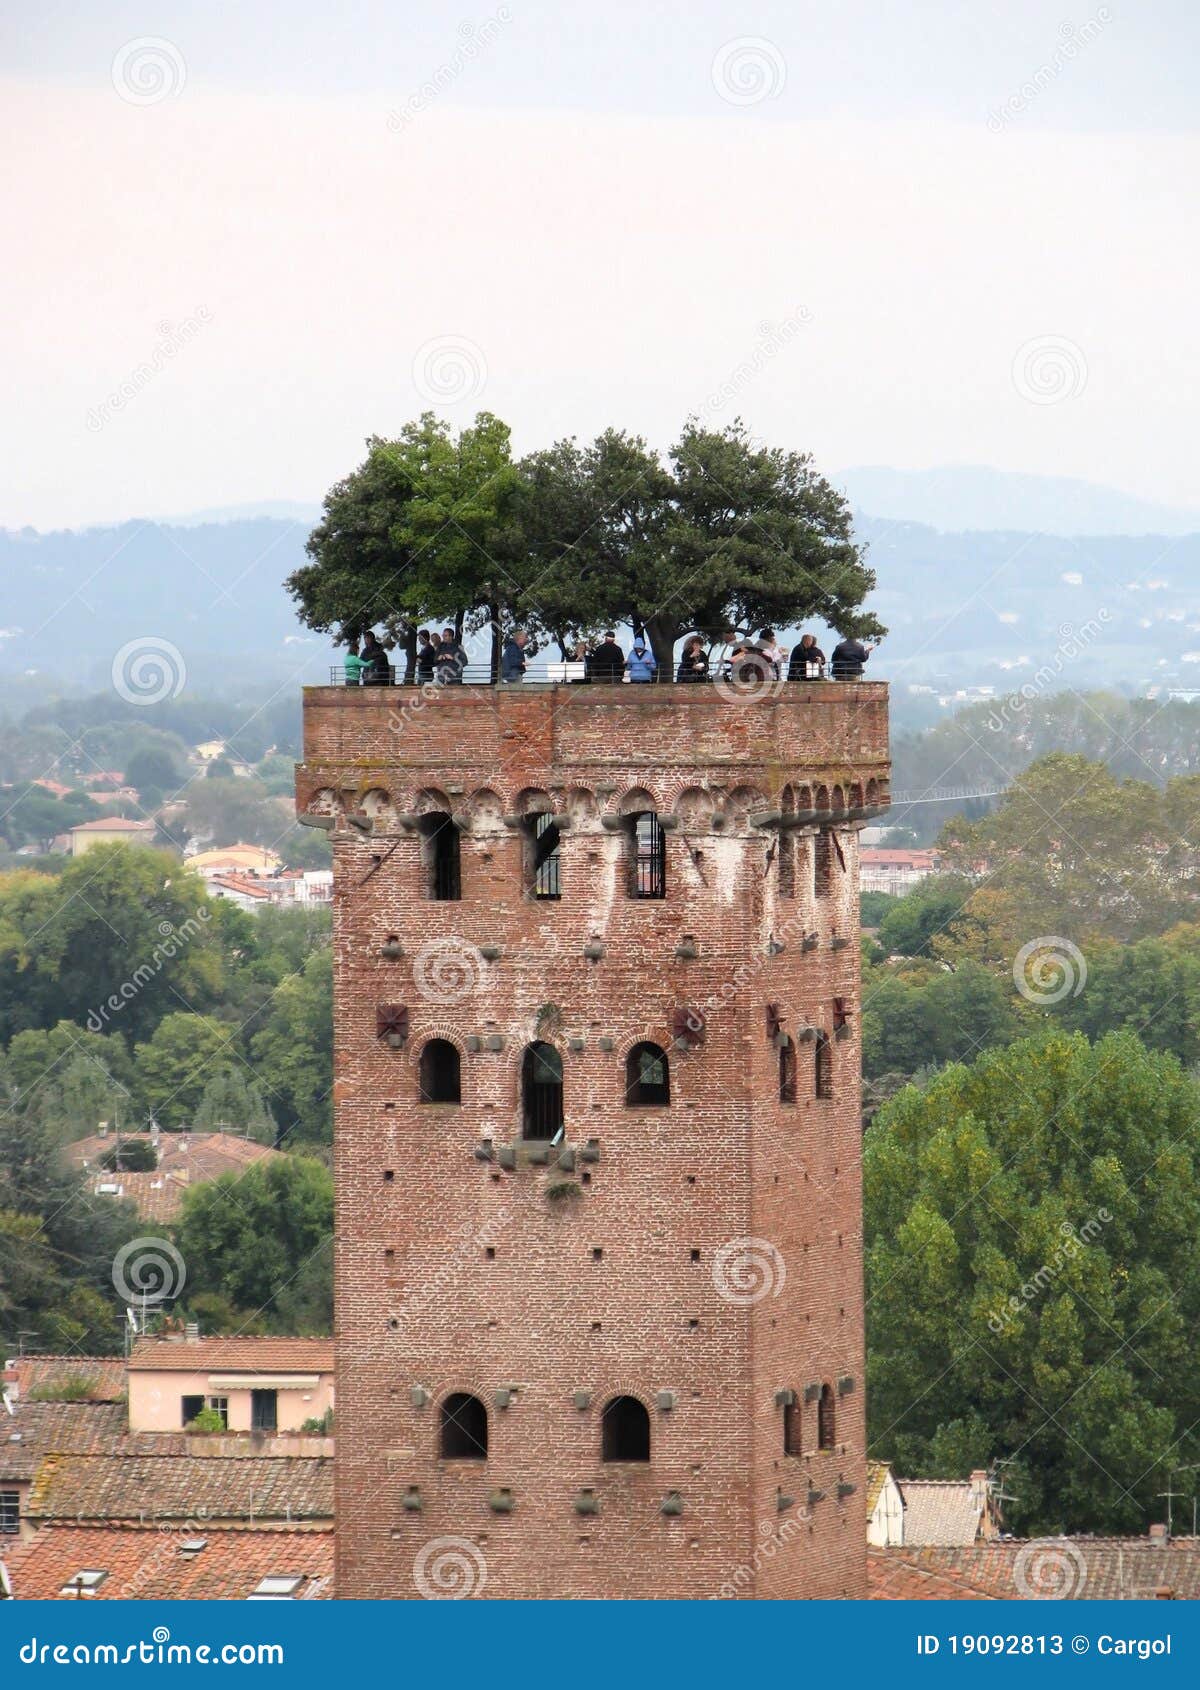 guinigi tower in lucca